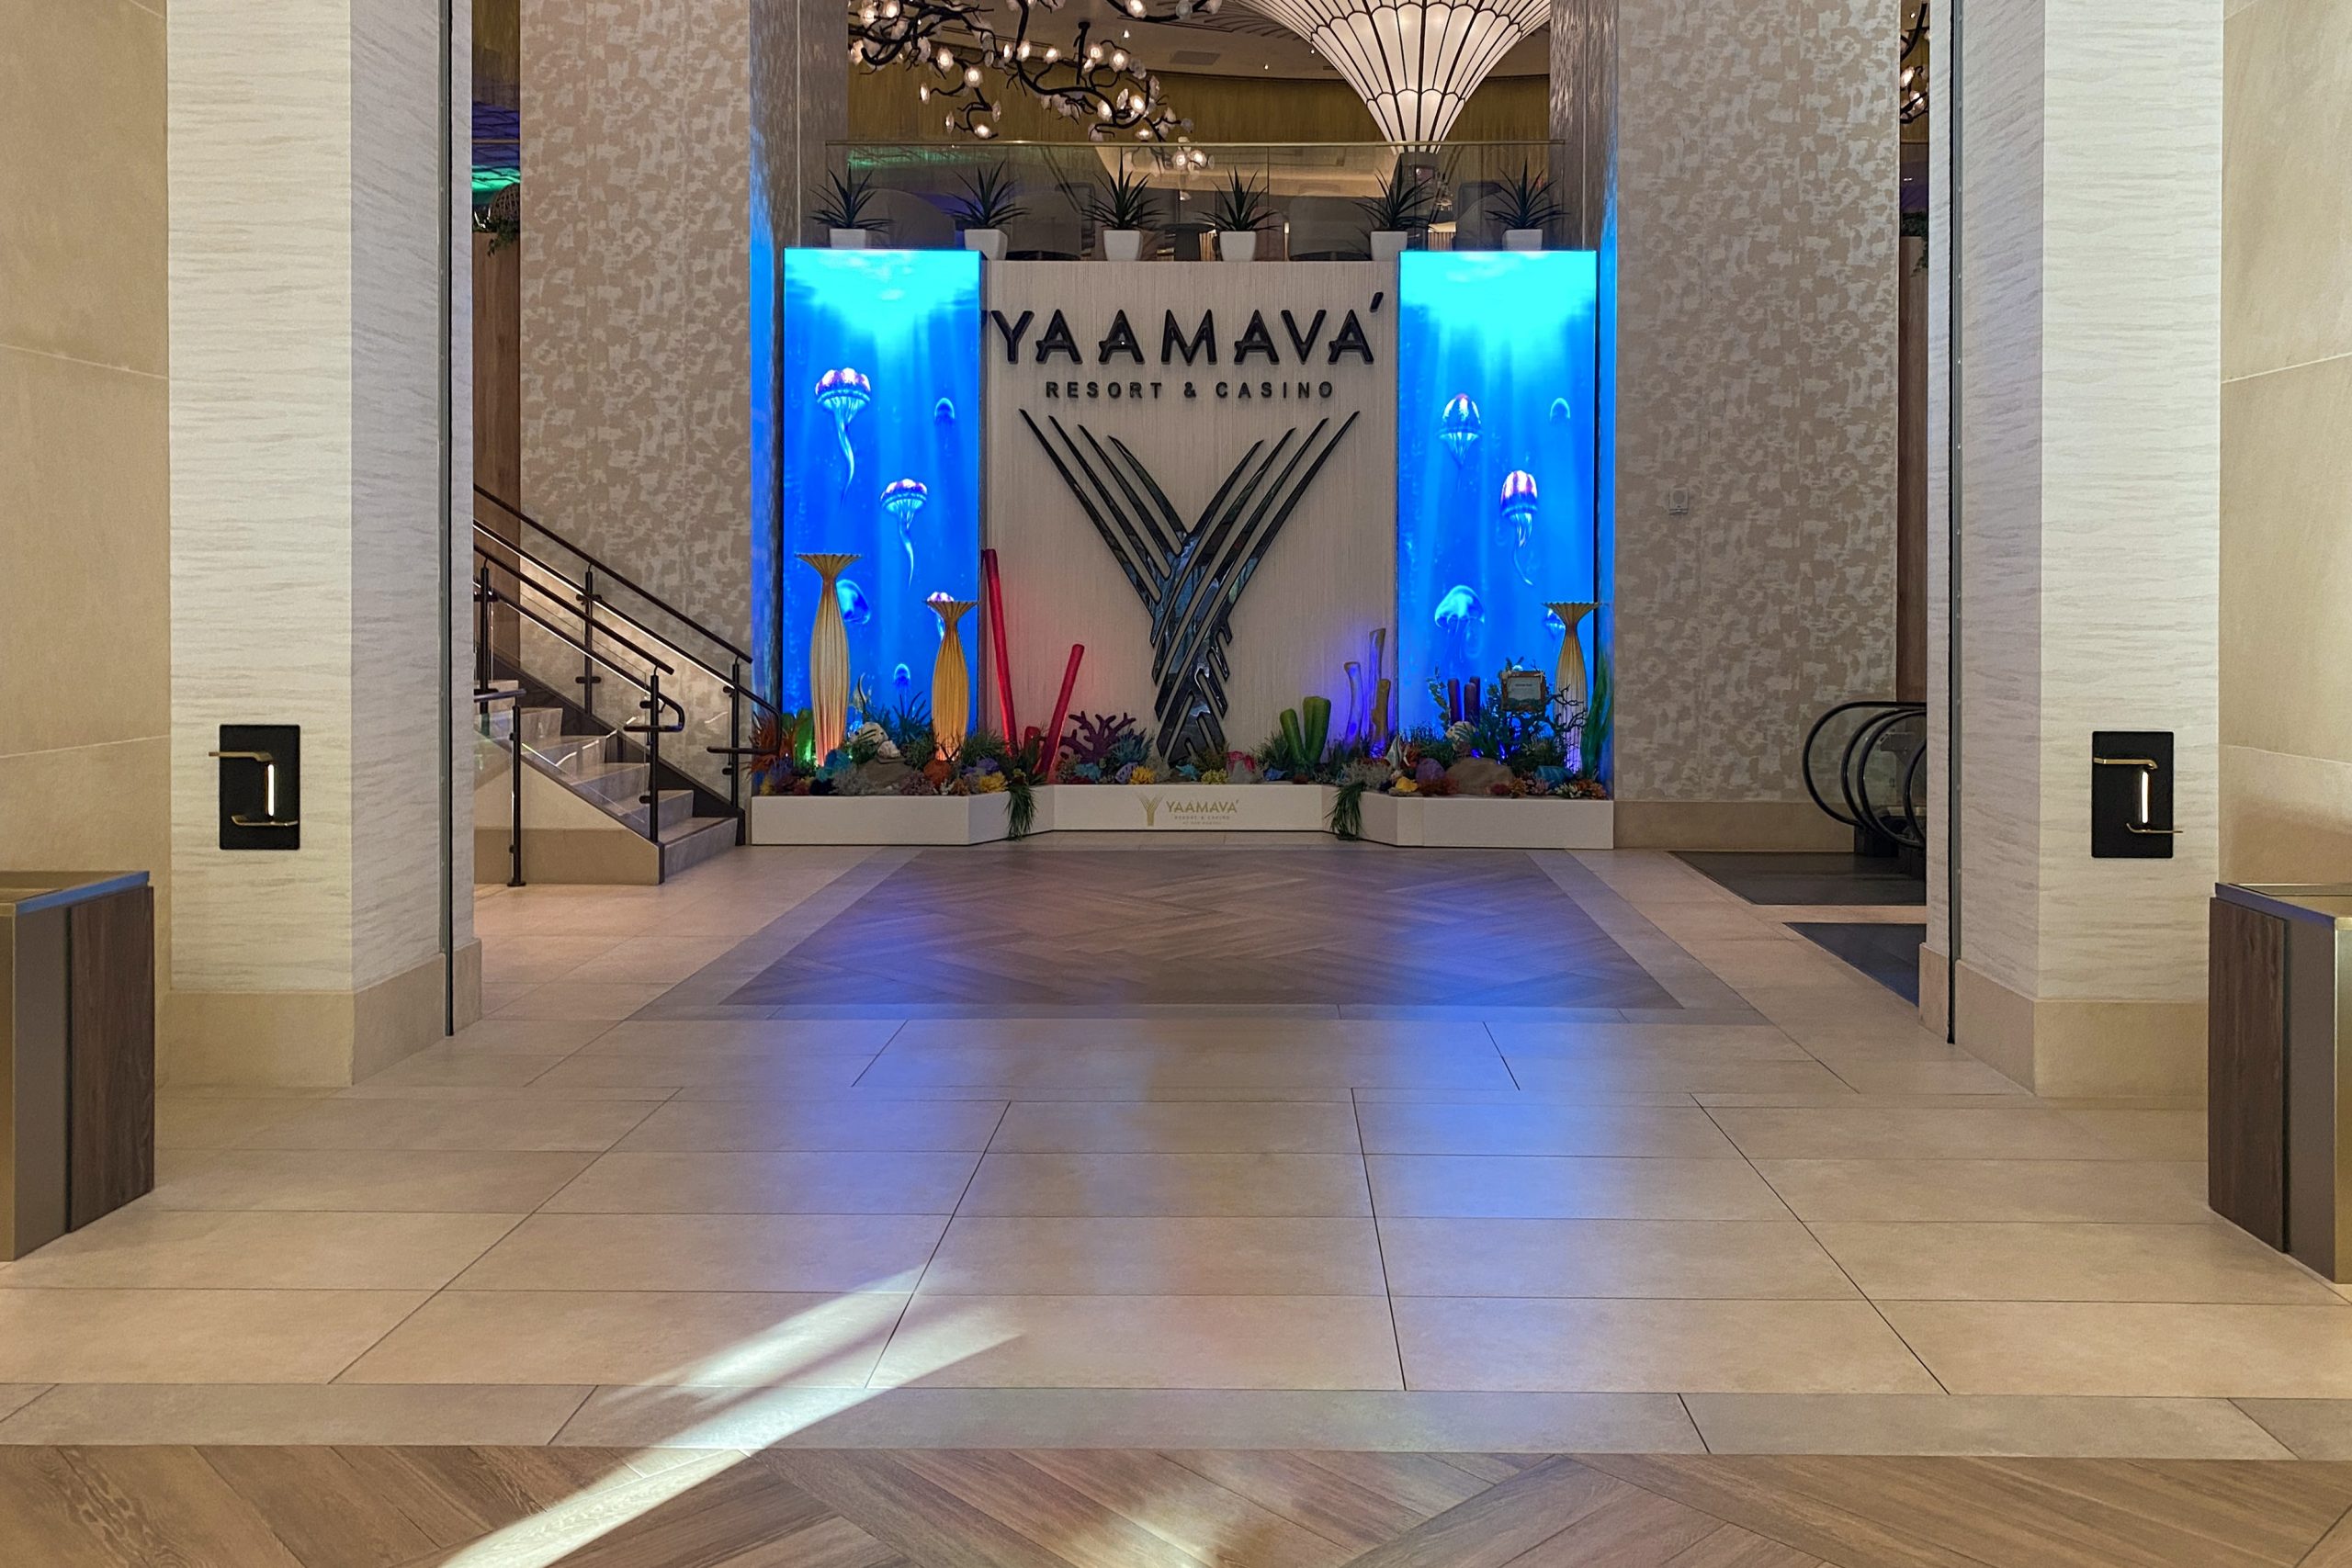 Yaamava’ Resort & Casino